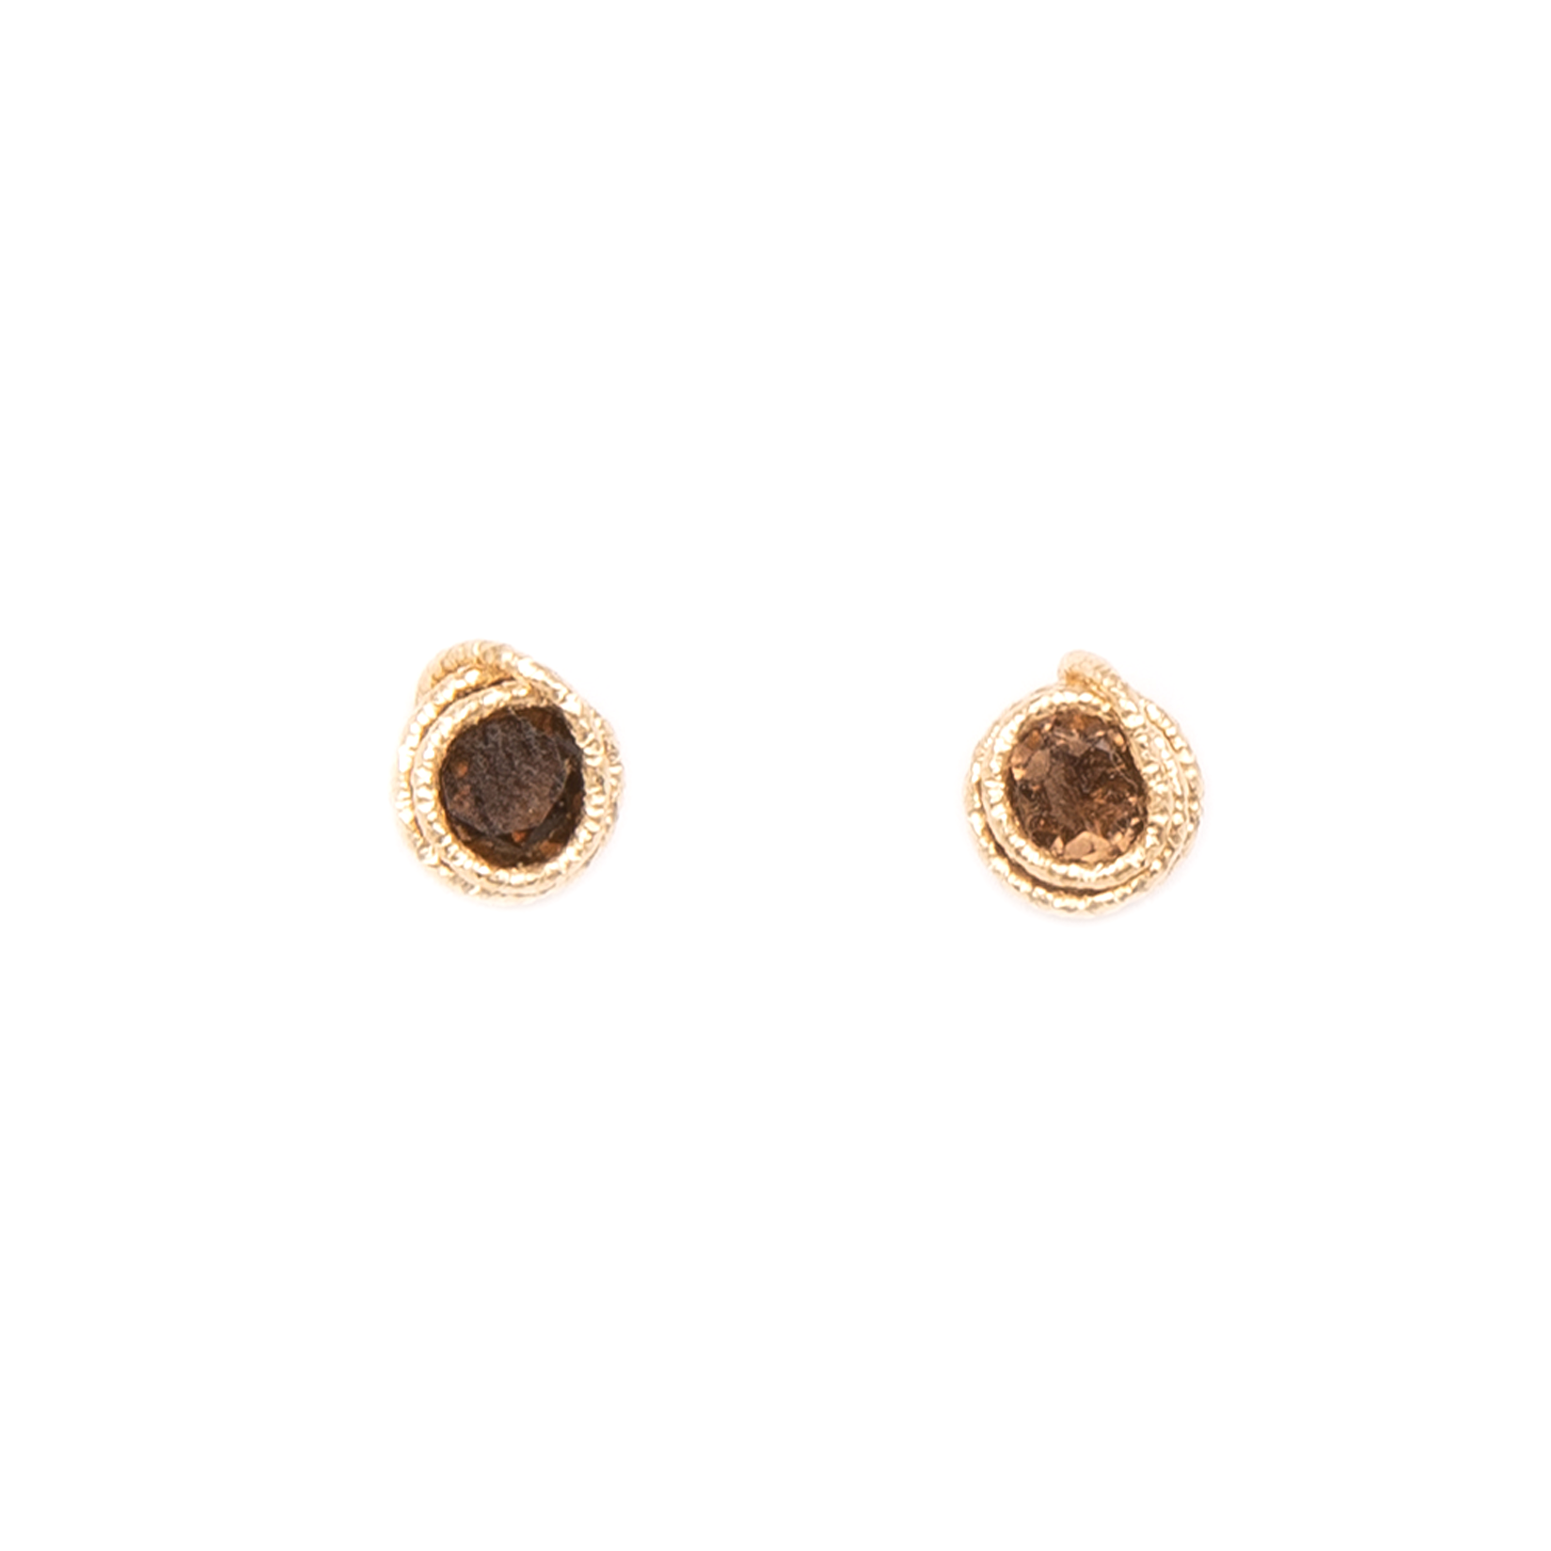 Carmencita Earrings #3 (6-7mm) - Smoky Quartz Earrings TARBAY   